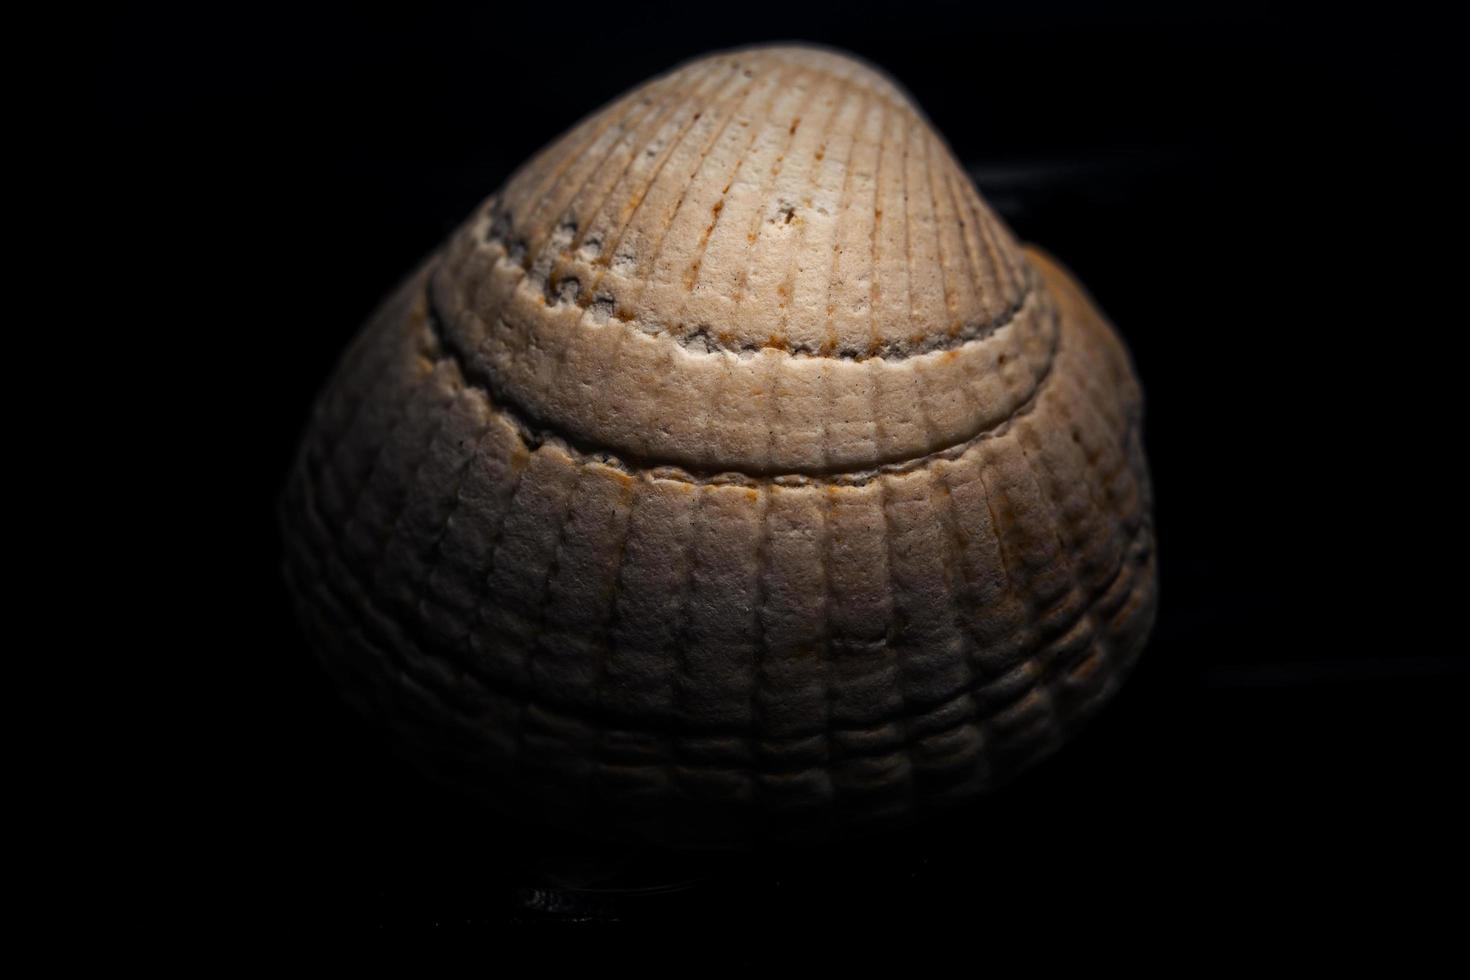 Seashell on black background photo